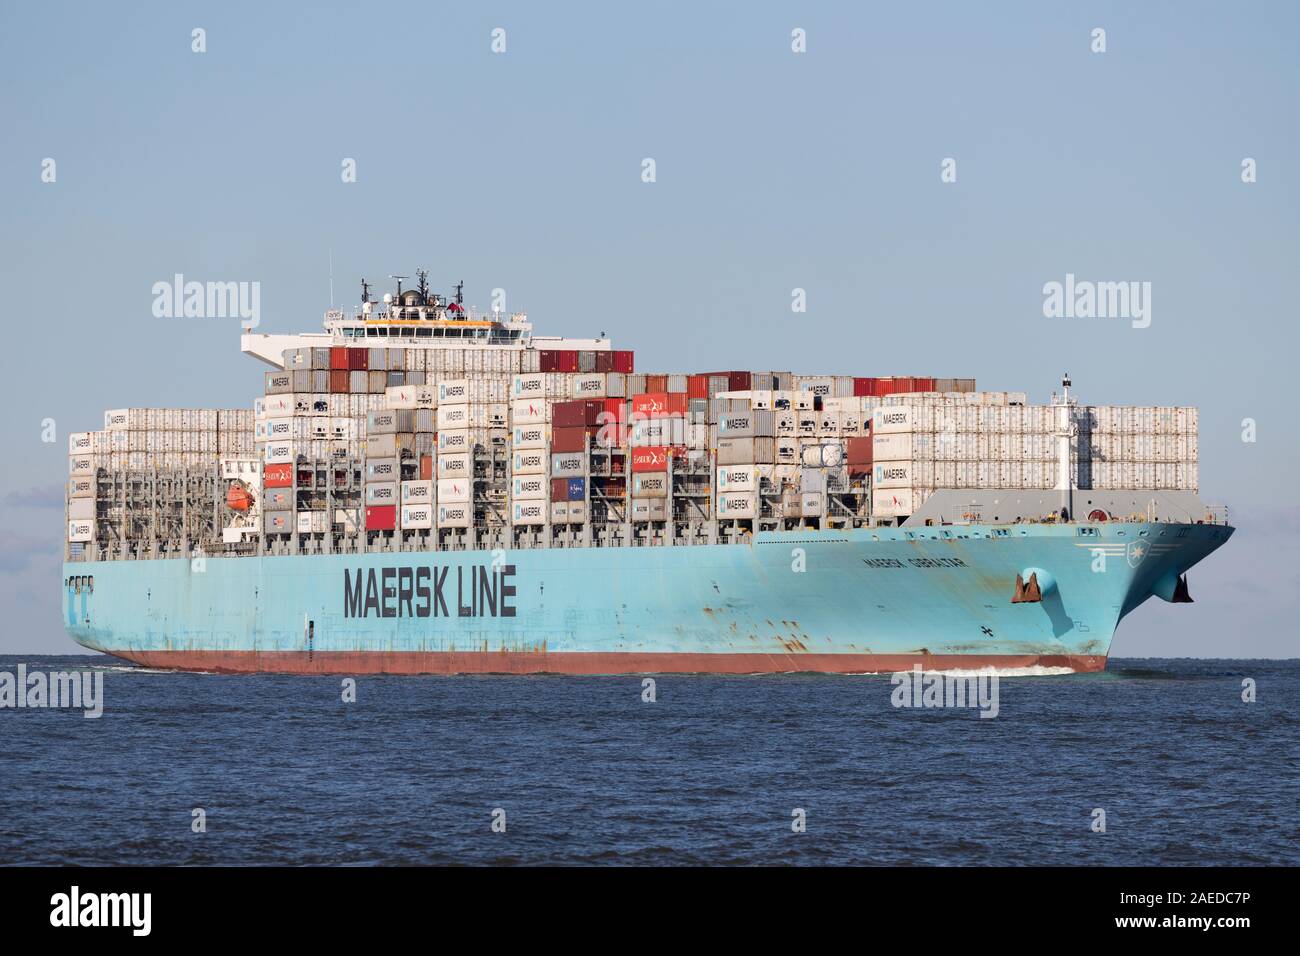 MAERSK GIBRALTAR sur l'Elbe. Maersk est le plus grand exploitant de navires à conteneurs dans le monde. Banque D'Images